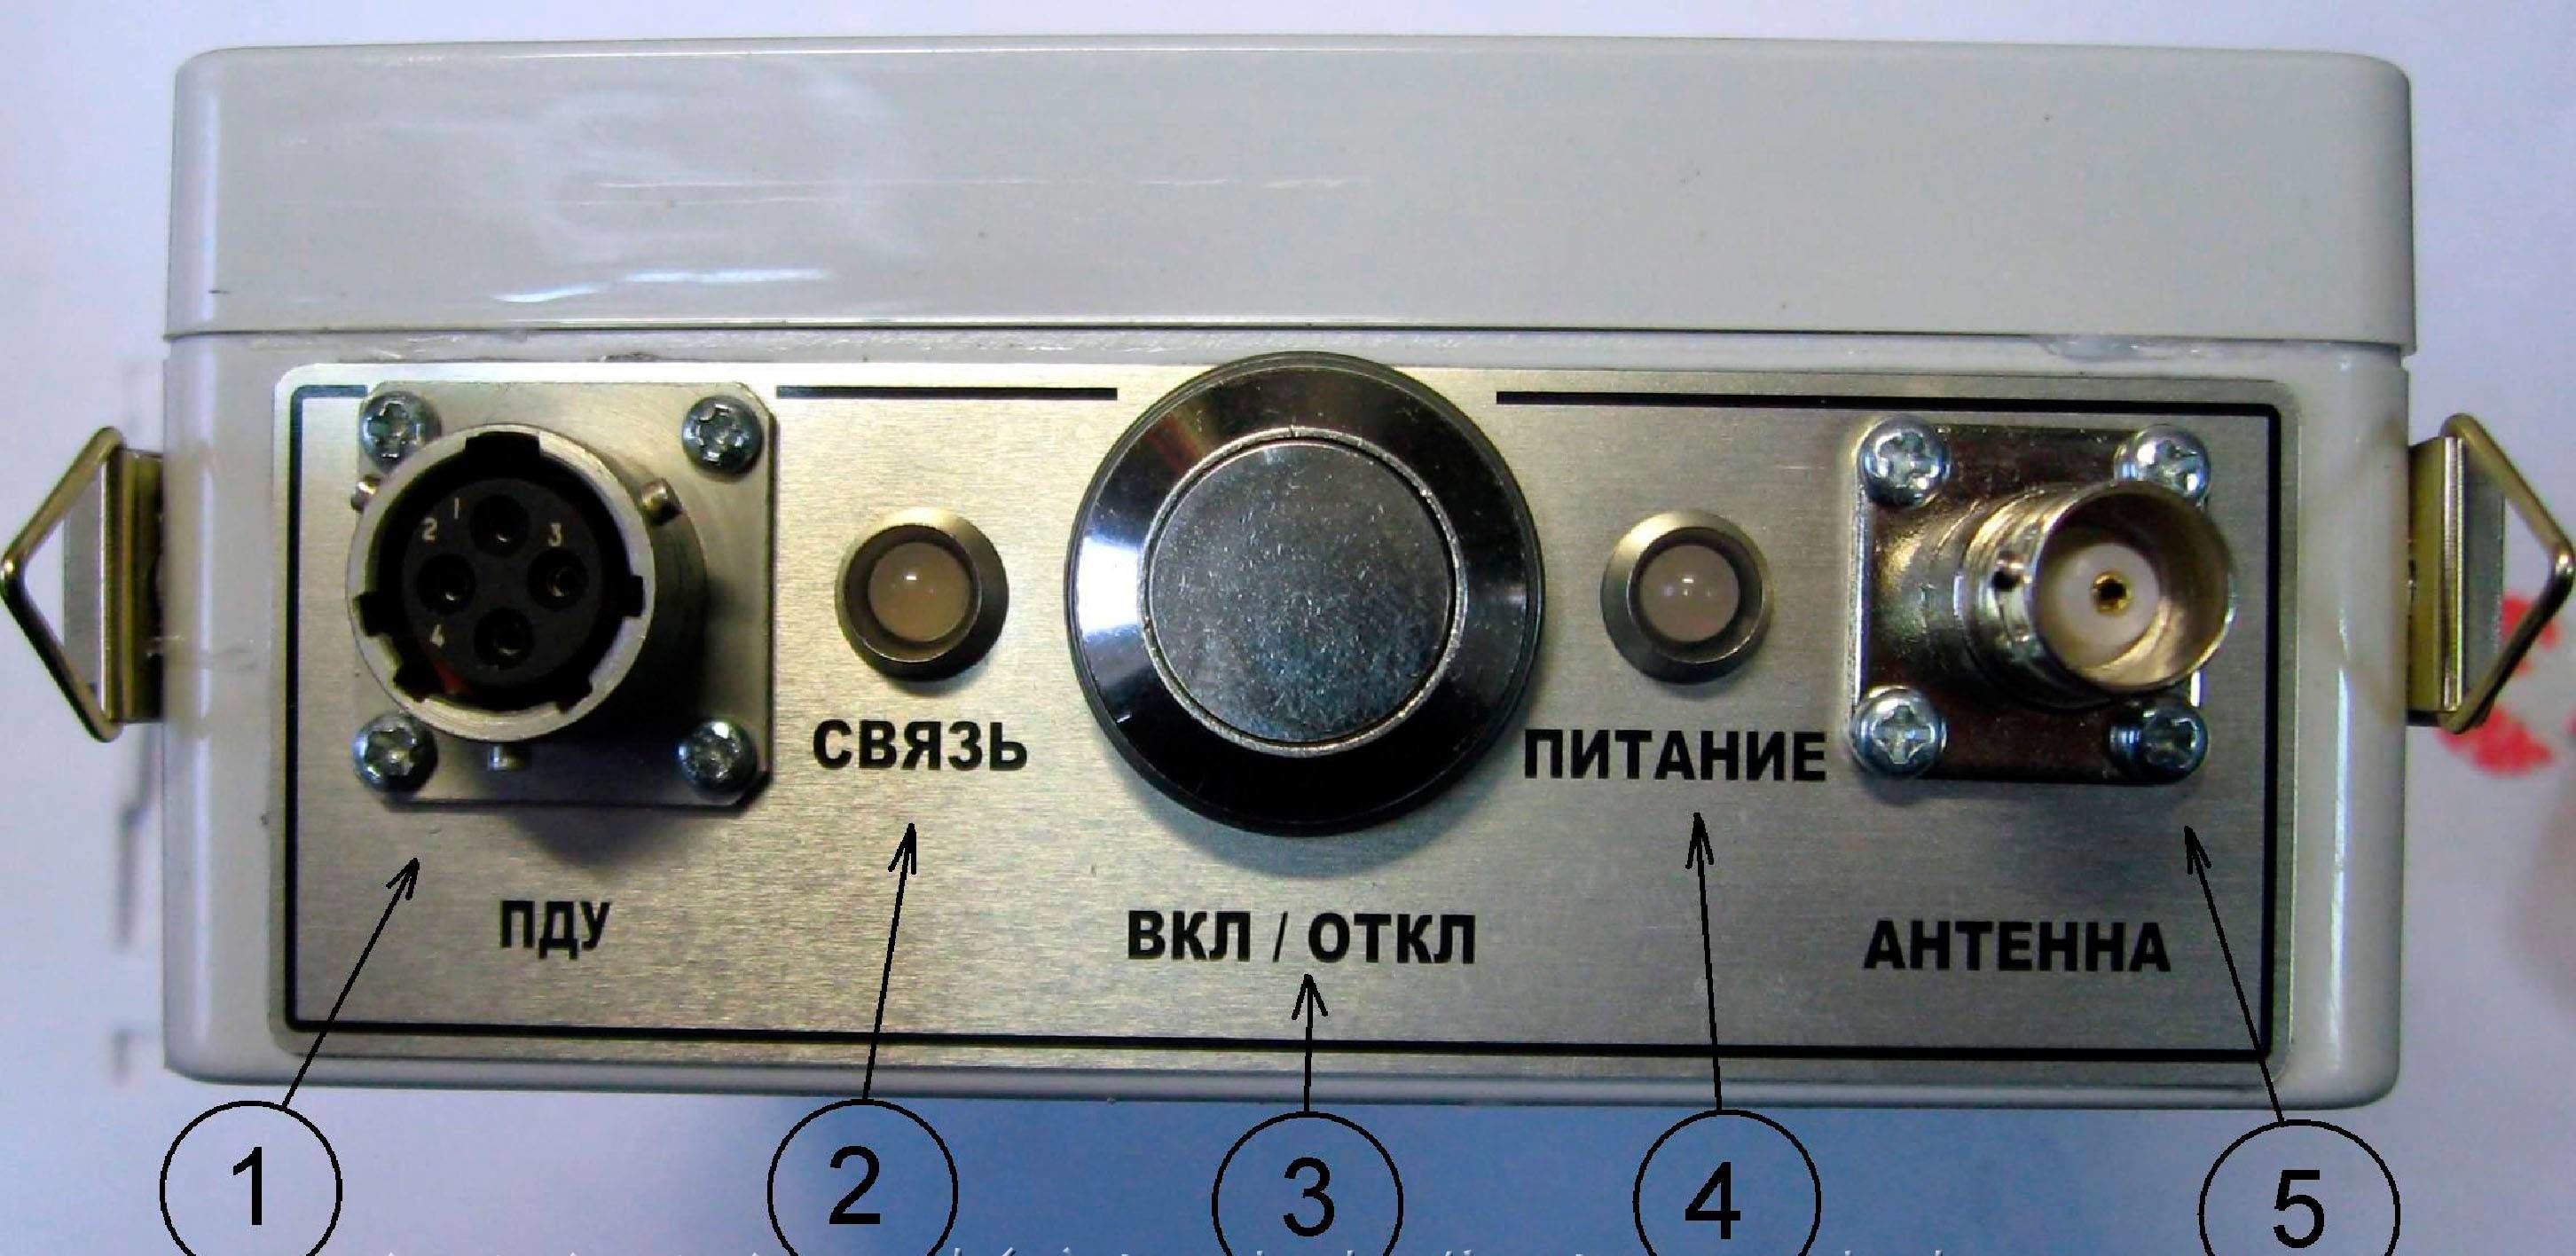 Система радиоуправления для аппарата РПД-150C, РПД-200С,РПД-250С в НКПРОМ.РУ  – картинка – 1